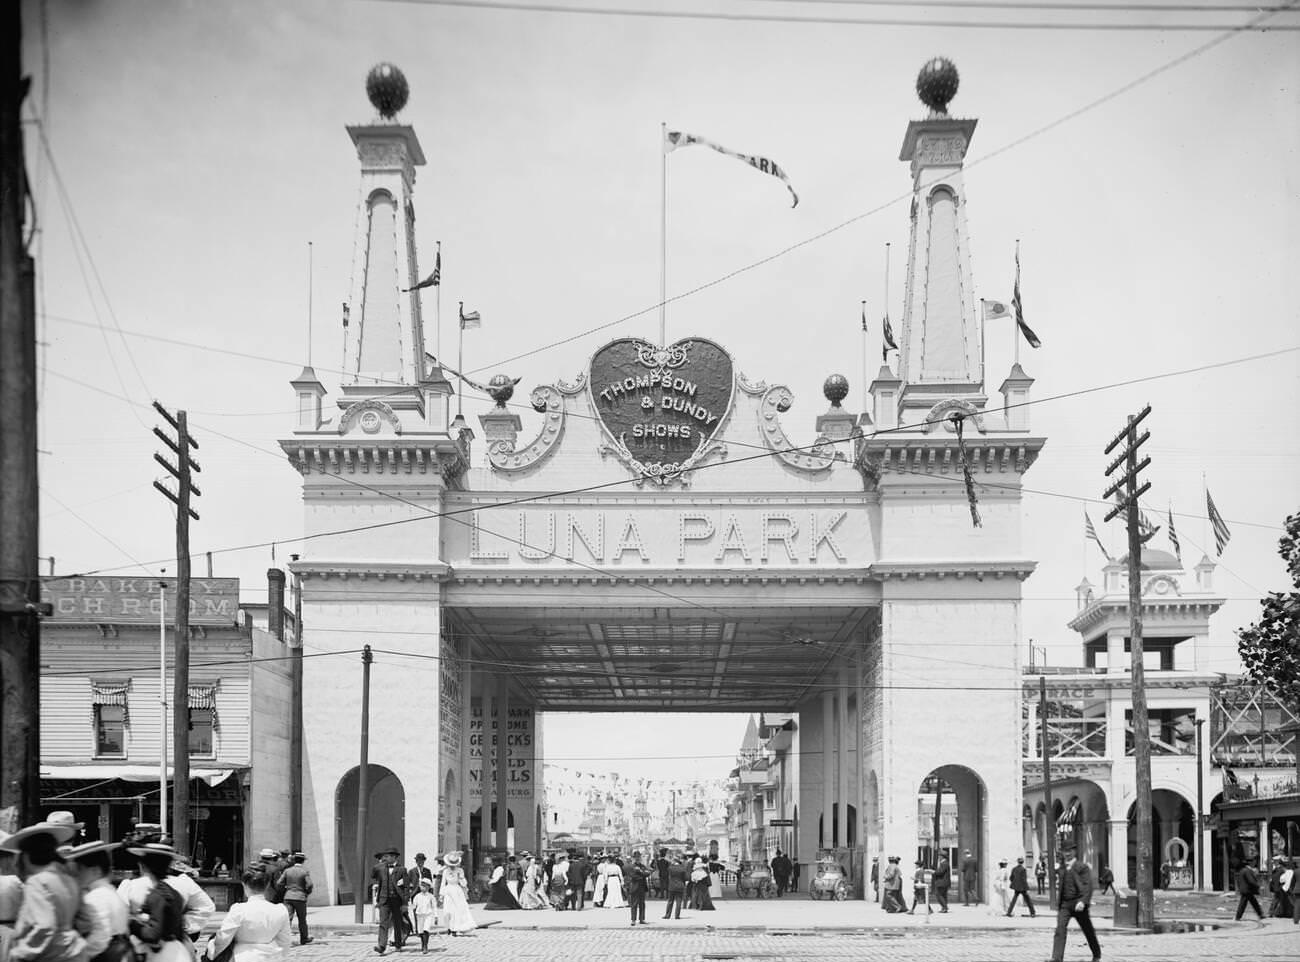 Luna Park Entrance In Coney Island, Brooklyn, 1905